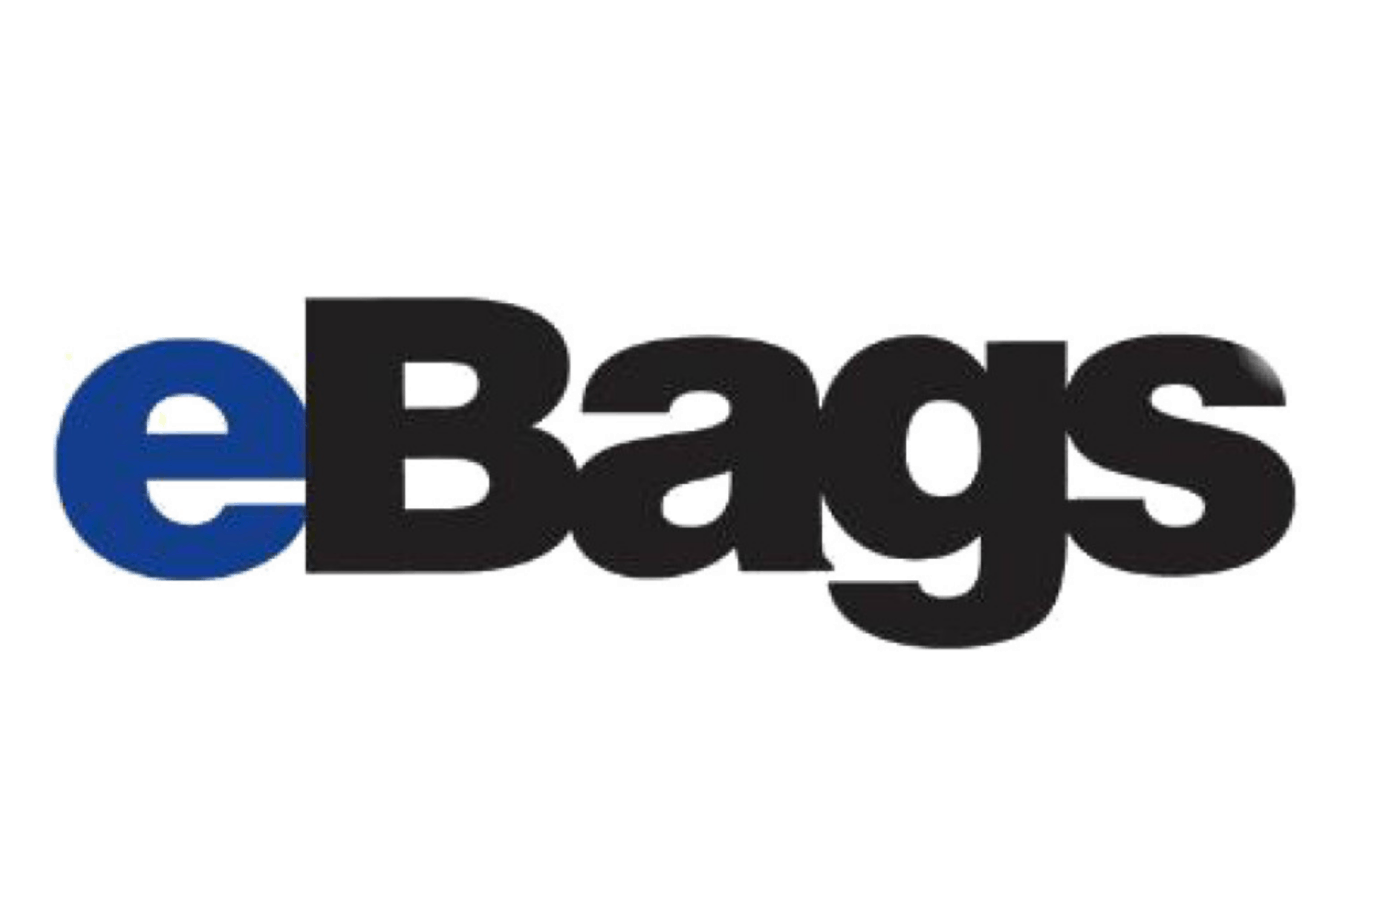 eBags.com